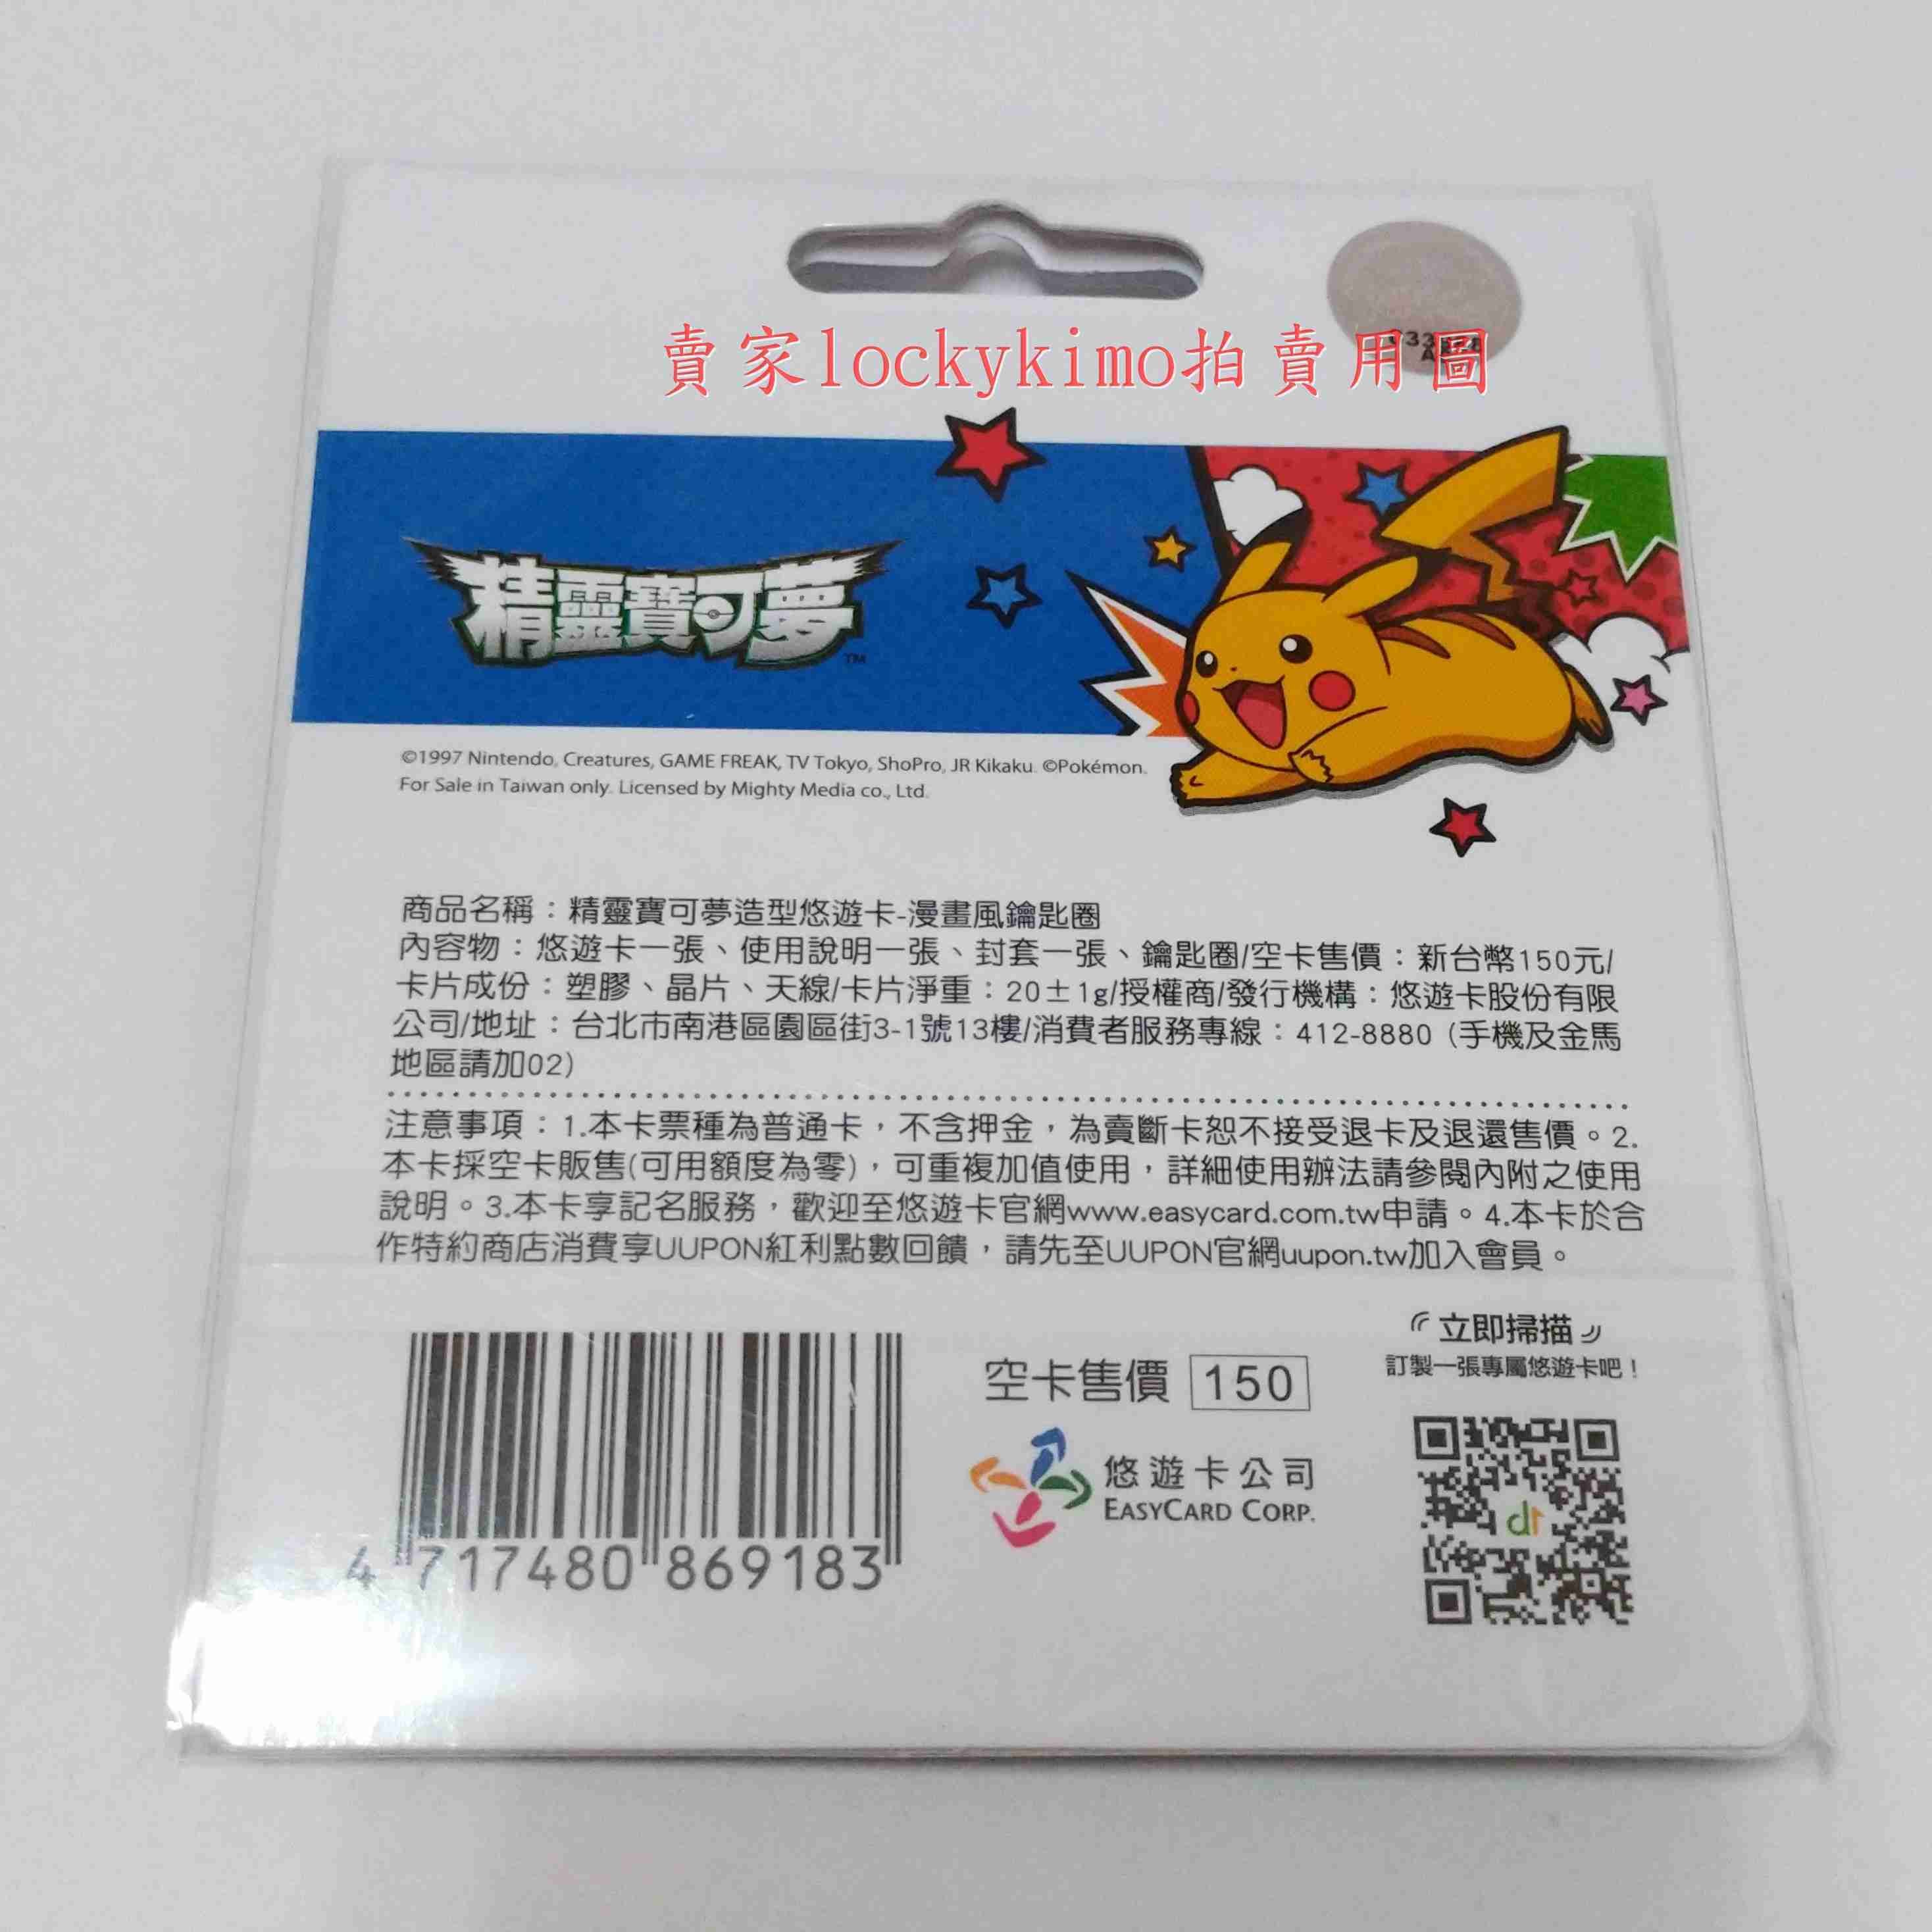 【精靈寶可夢 造型 悠遊卡 漫畫風 鑰匙圈】PIKACHU 神奇寶貝 收藏卡 珍藏卡 皮卡丘 yoyo卡 Pokémon